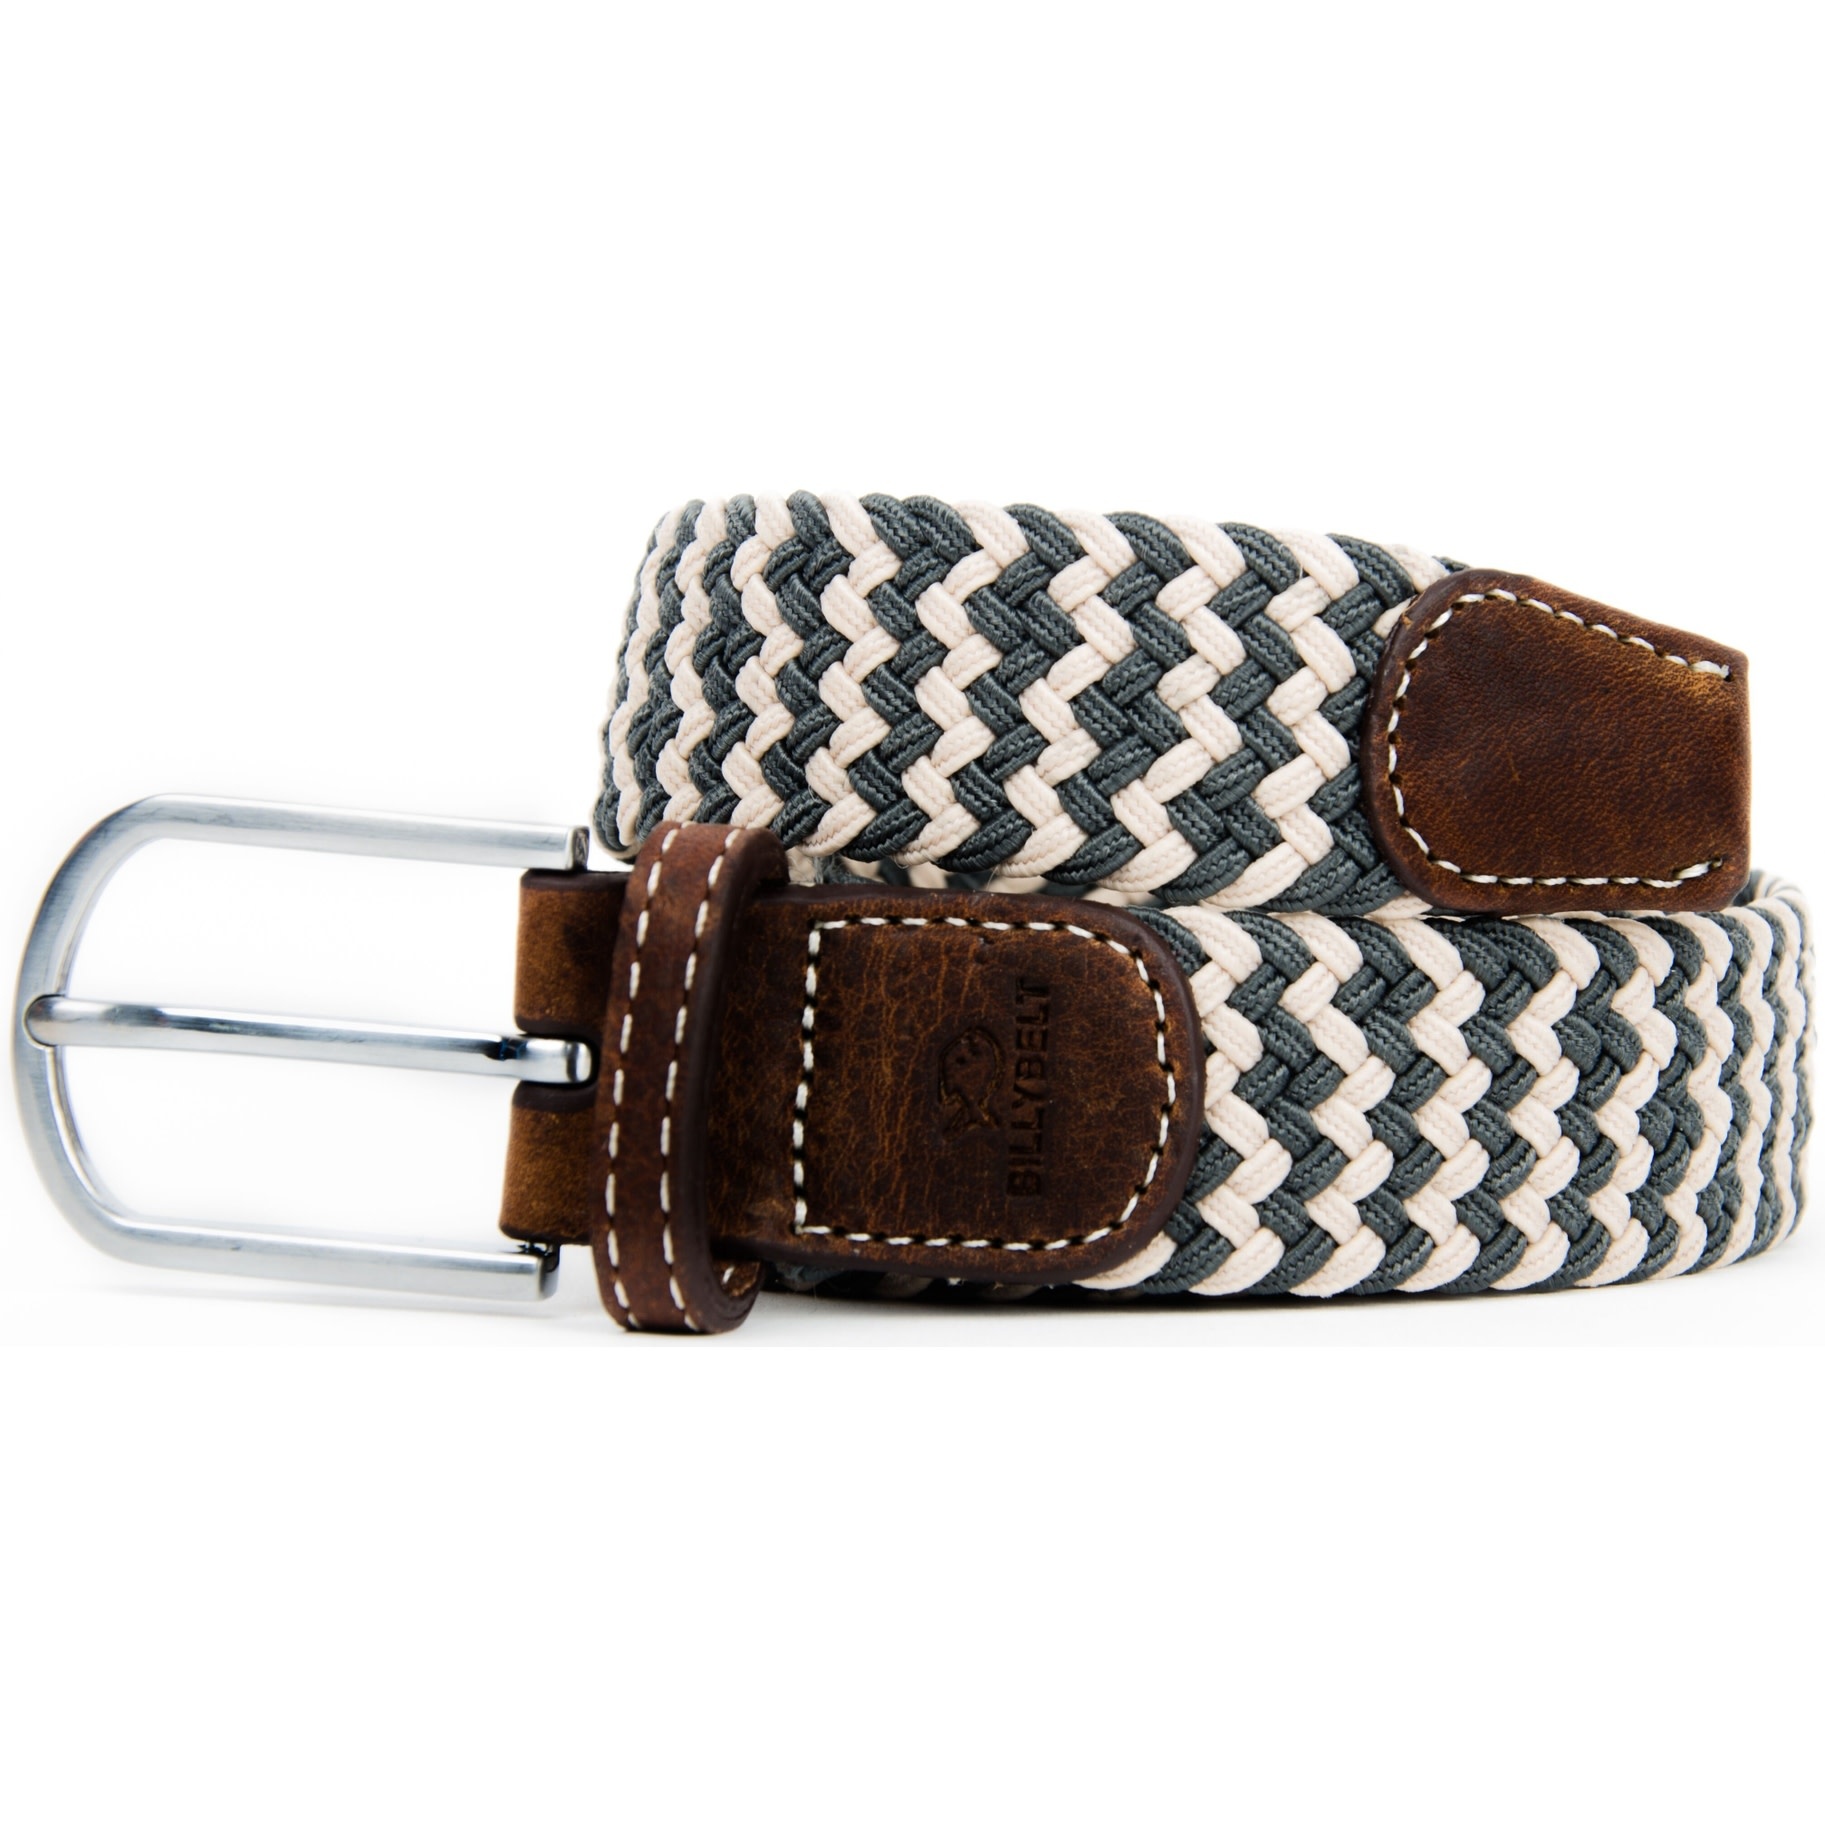 BILLYBELT - elastic belt, braided, leather MEN - Havana